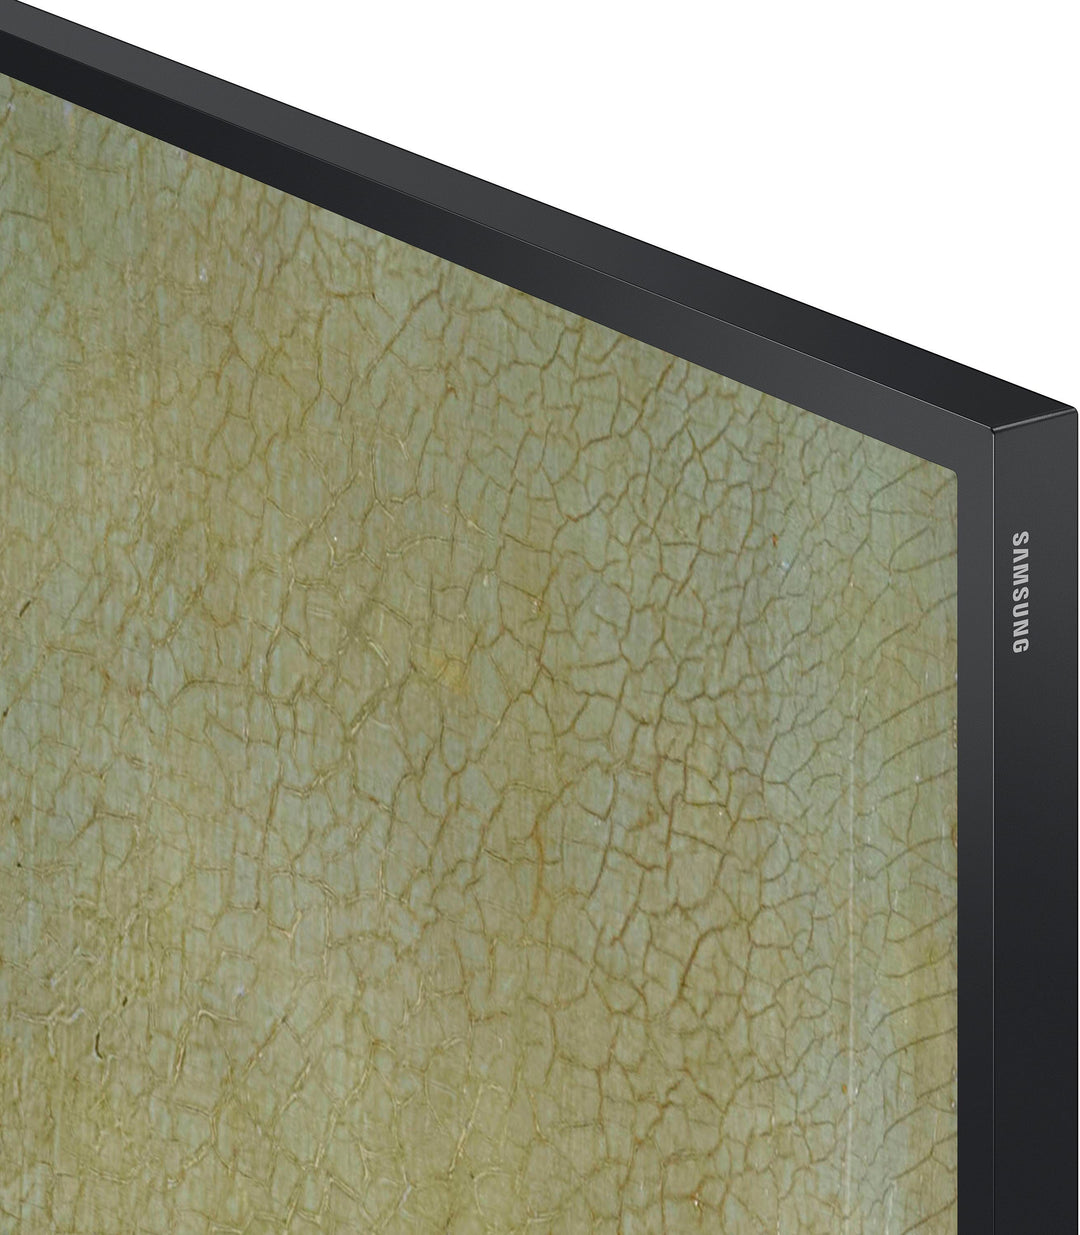 Samsung - 75" Class The Frame QLED 4k Smart Tizen TV_13